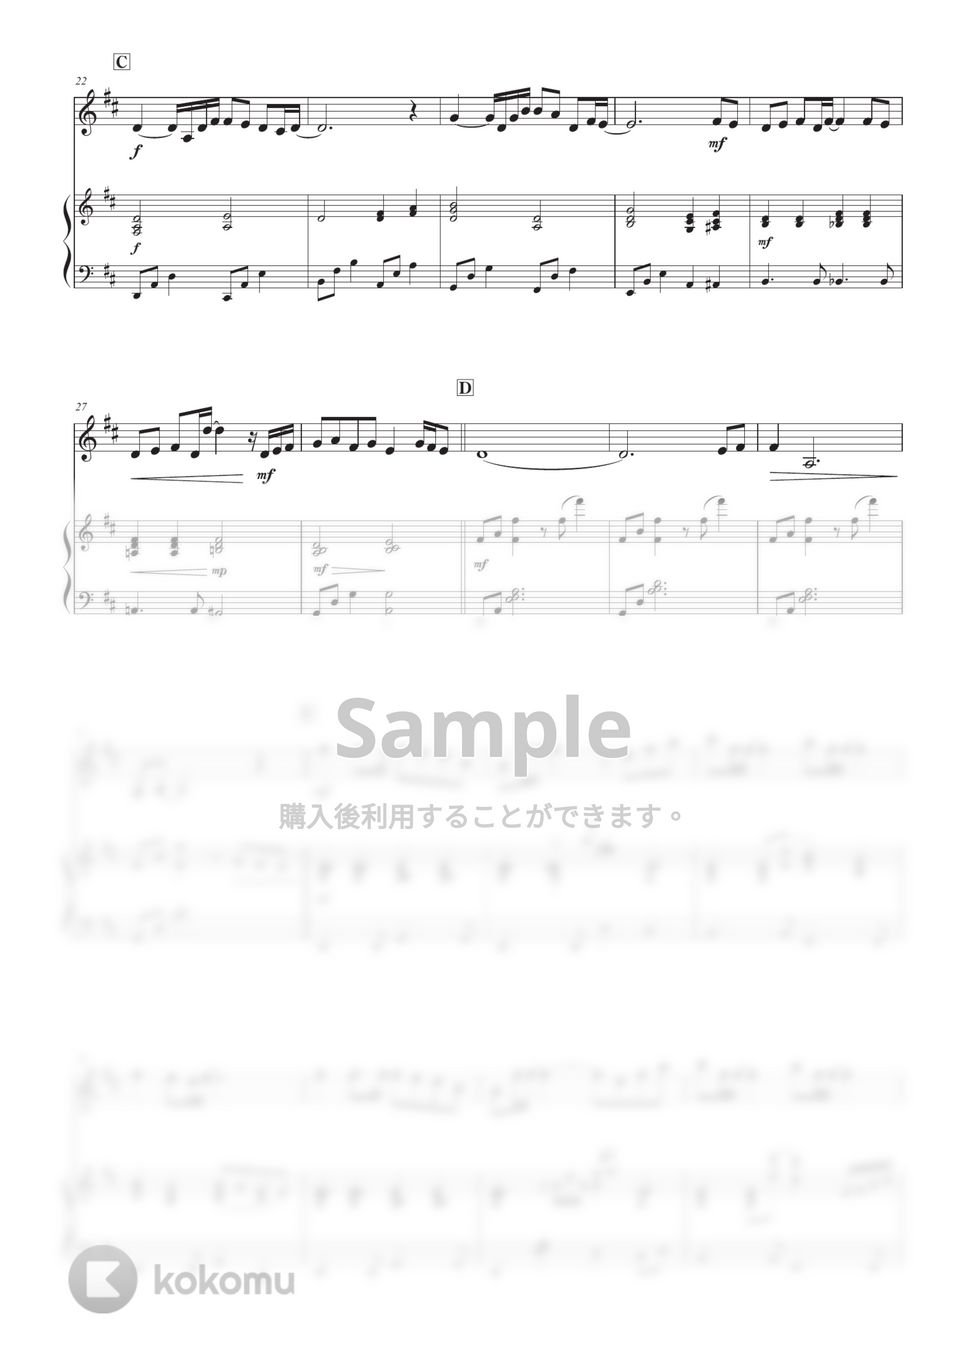 中島みゆき - 糸 (バイオリン版) by 栗原義継